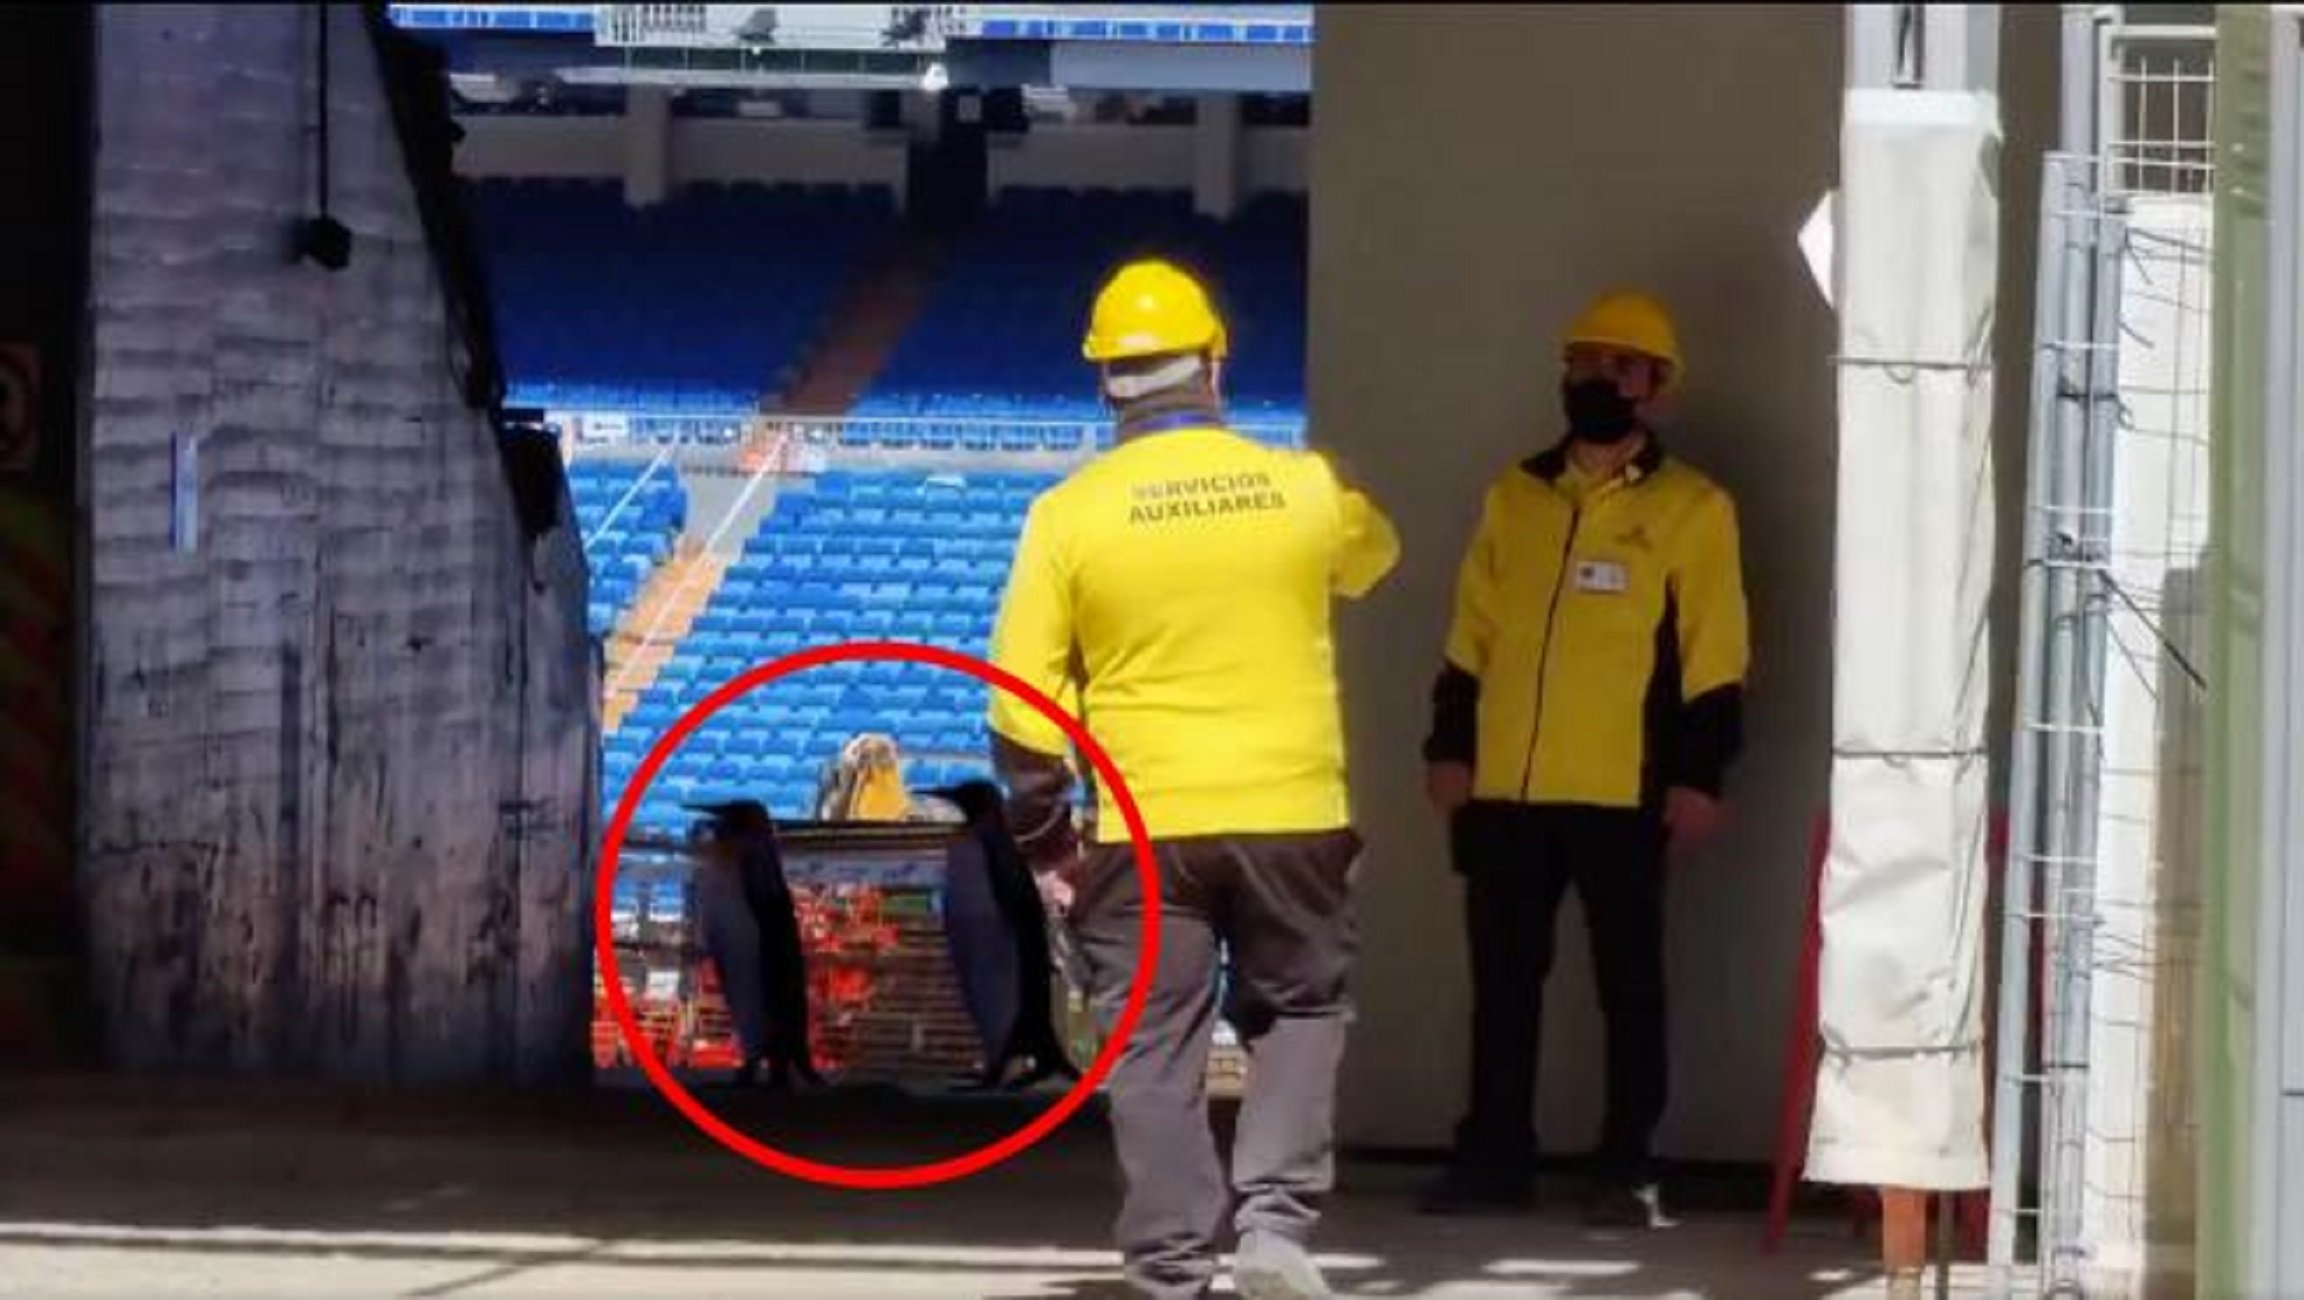 Surrealisme a les xarxes: apareixen 2 pingüins a les obres del Bernabéu